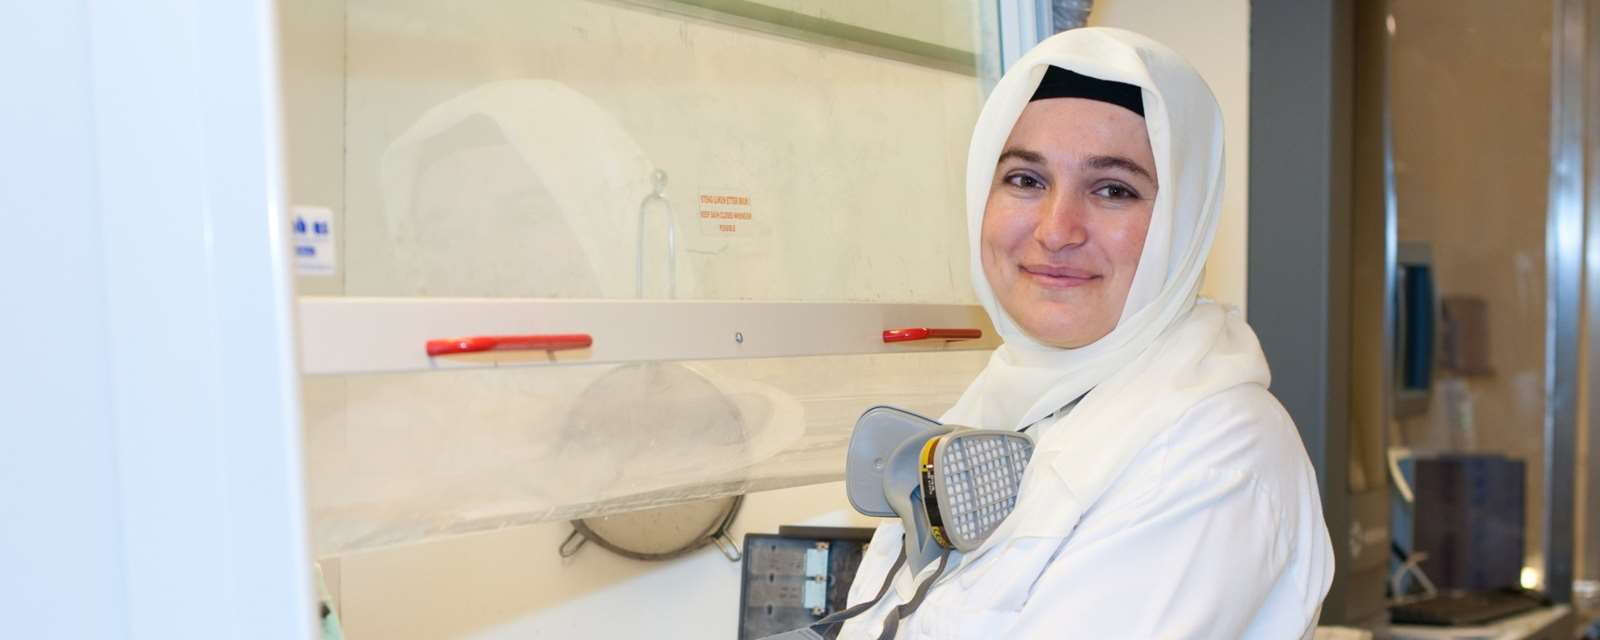 Bioingeniør Esra Taymur har arbeidet ved patologilaboratoriet siden februar, men er fremdeles i opplæring. I dag lærer hun om fremføringsmaskinen, som fjerner vann fra prøvene og fyller vevet med voks. Det tar rundt ett år før bioingeniørene er «selvgående» på laboratoriet. Foto: Frøy Lode Wiig